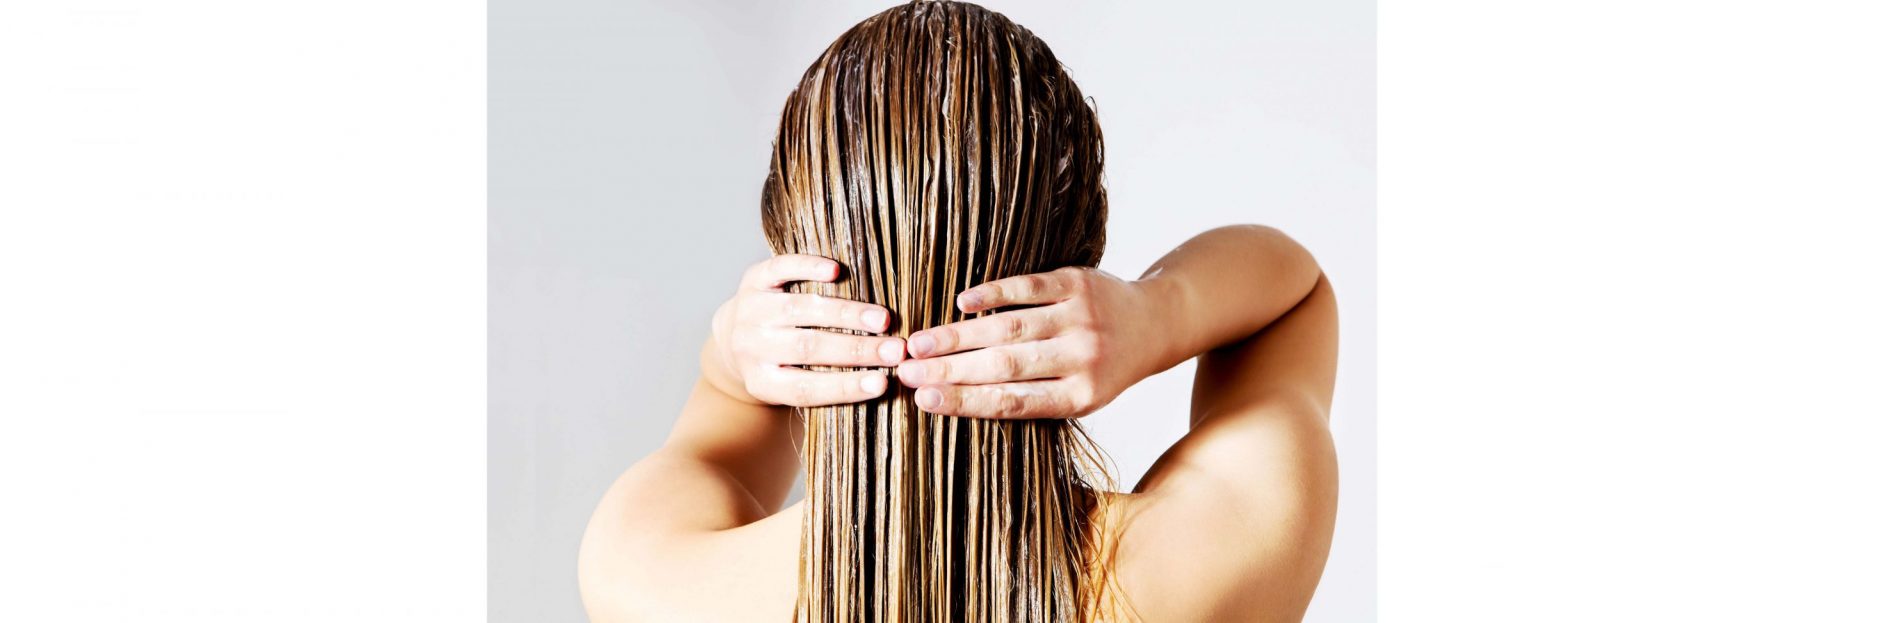 Базовые правила домашнего ухода за волосами | SAYPLE